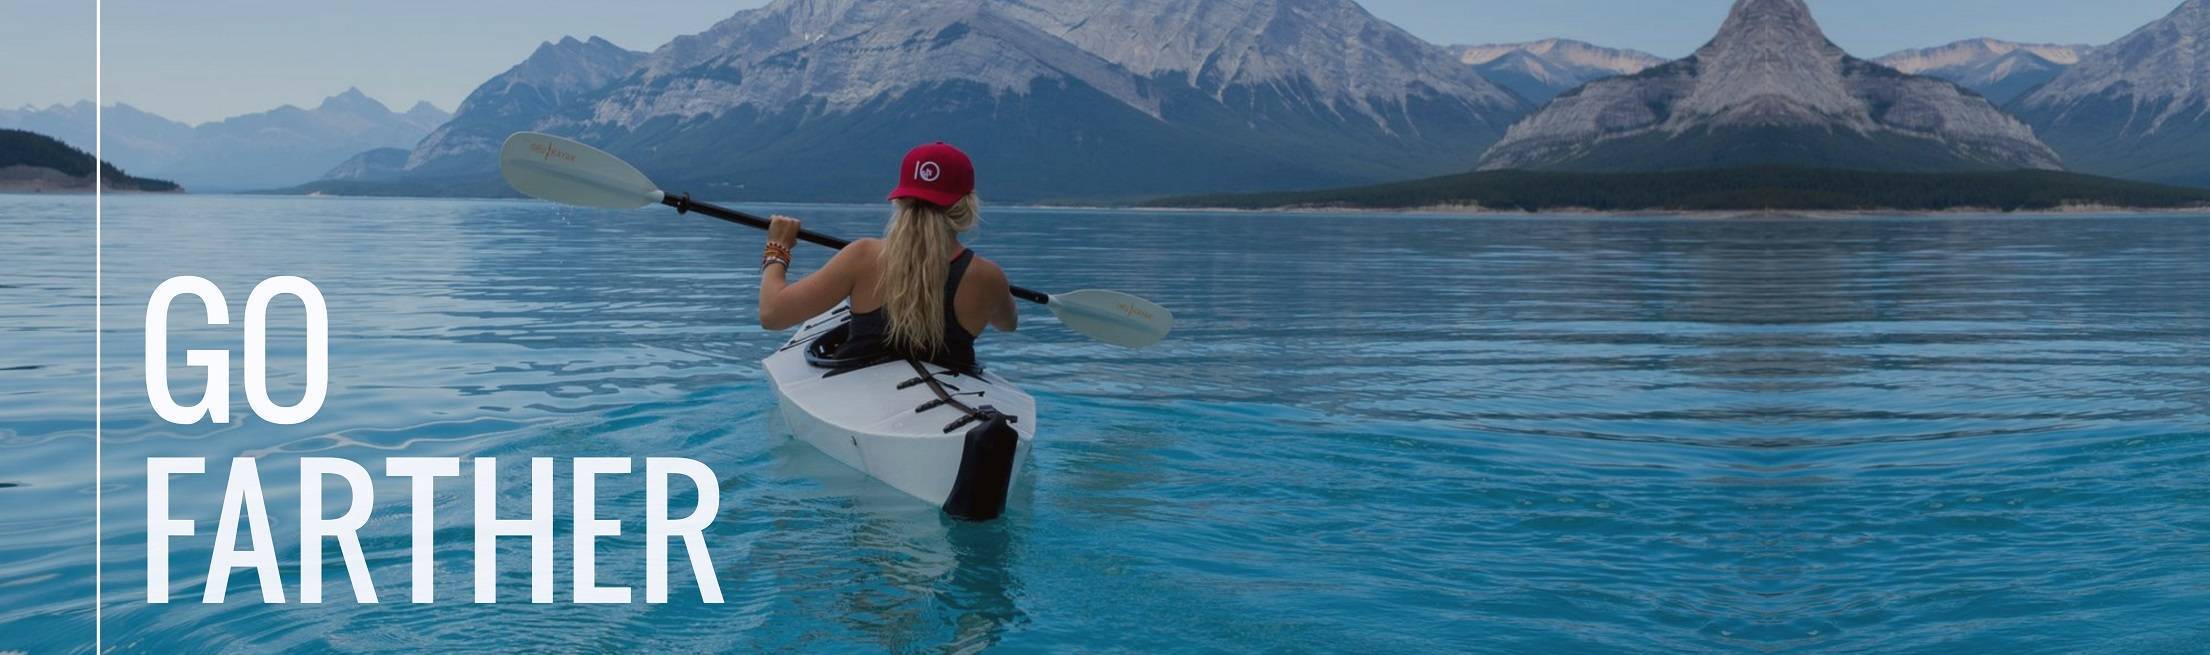 Female on kayak in mountain lake